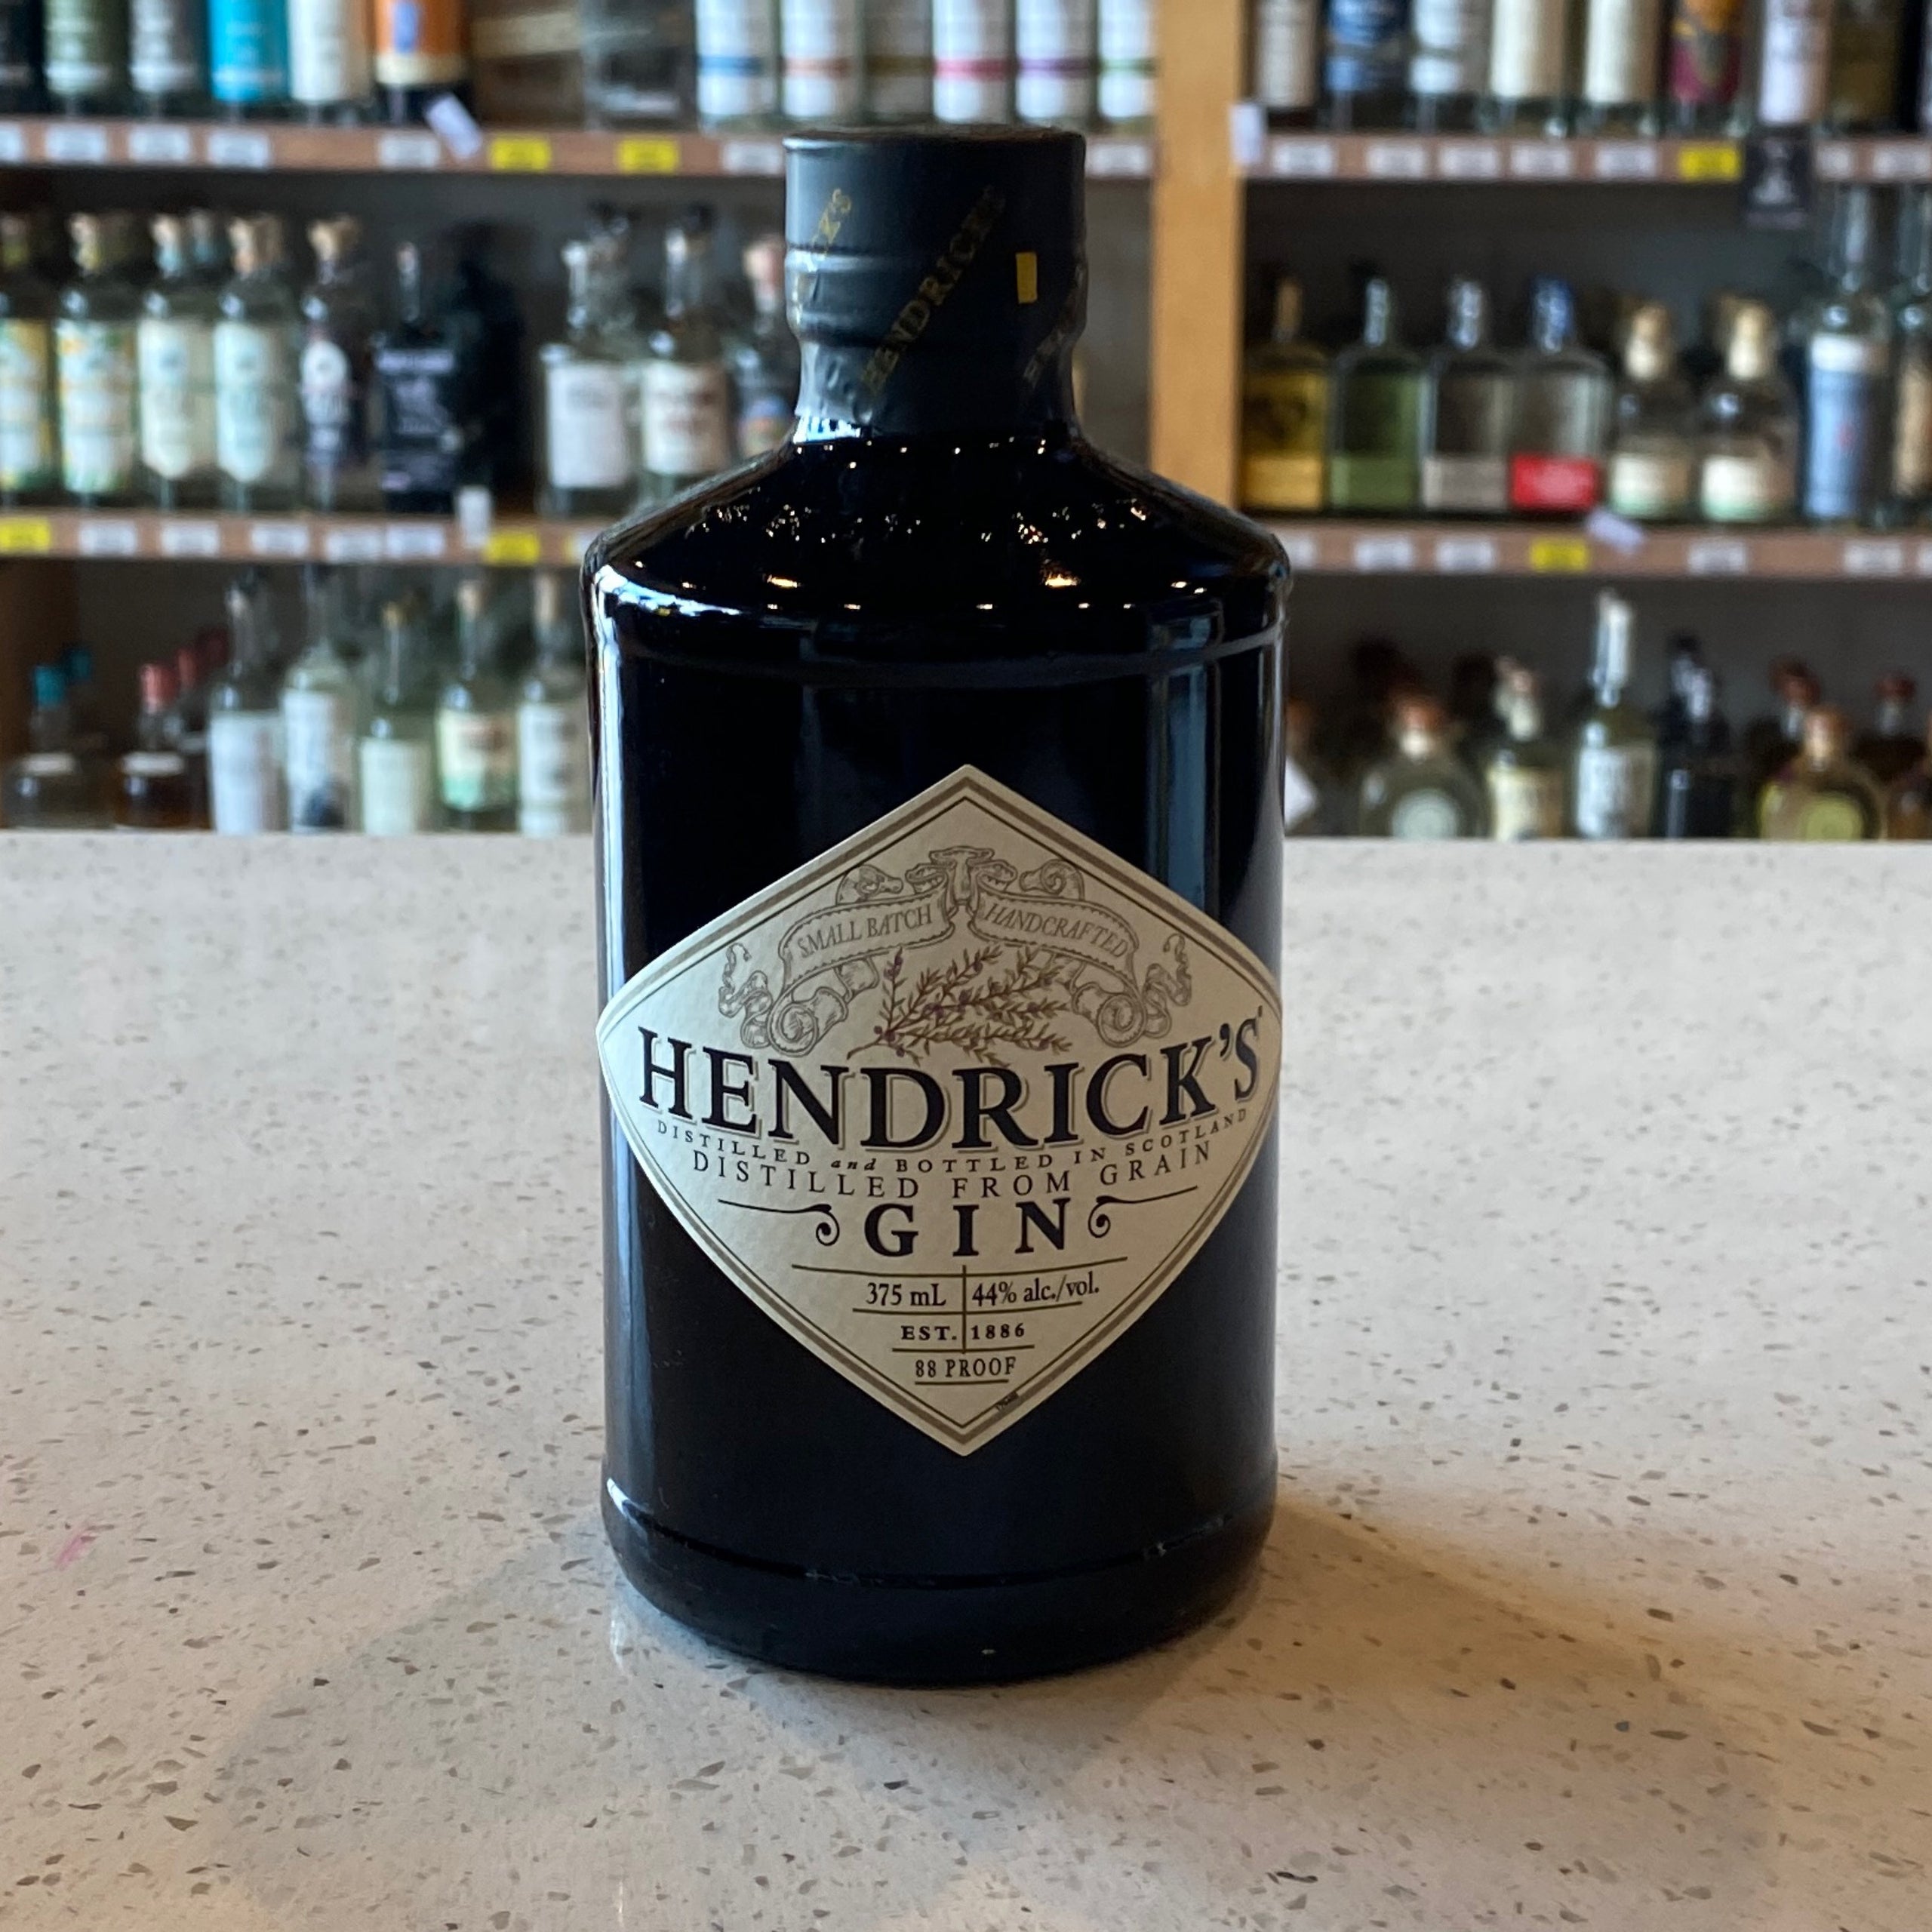 Hendricks gin 375ml